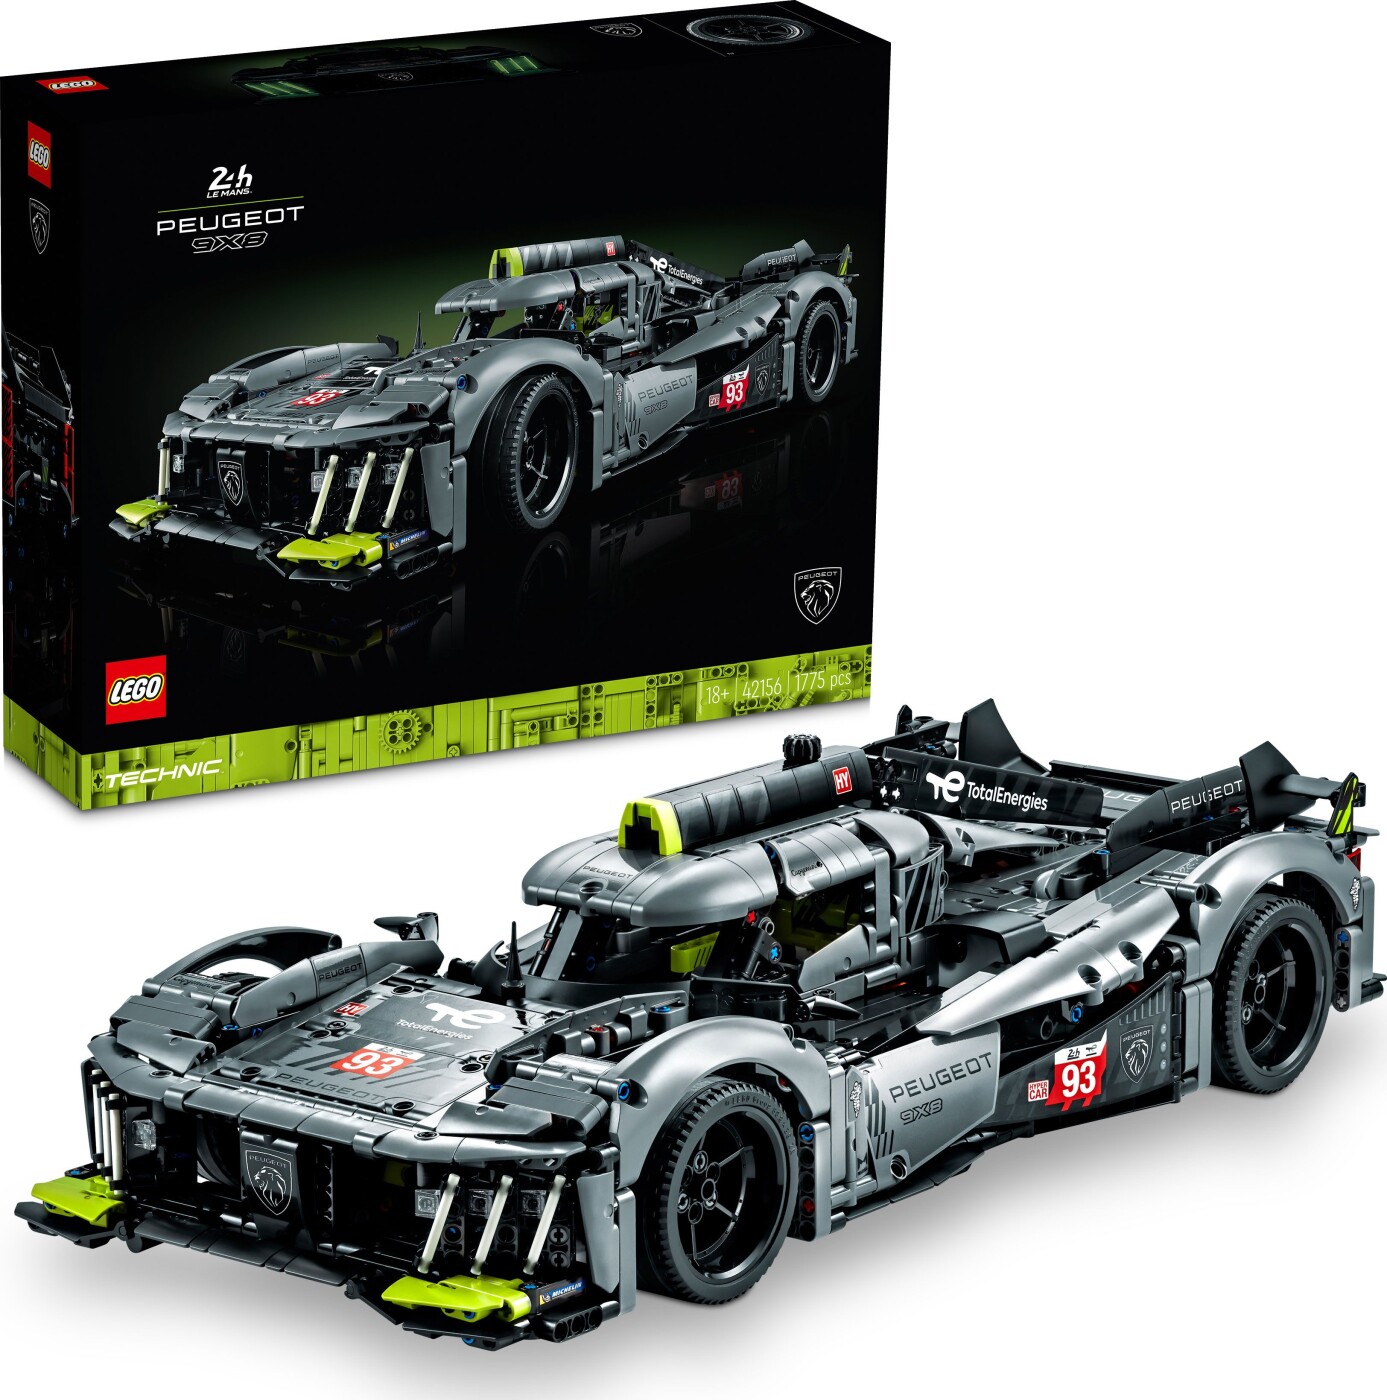 Billede af Lego Technic - Peugeot 9x8 24h Le Mans Hybrid Bil - 42156